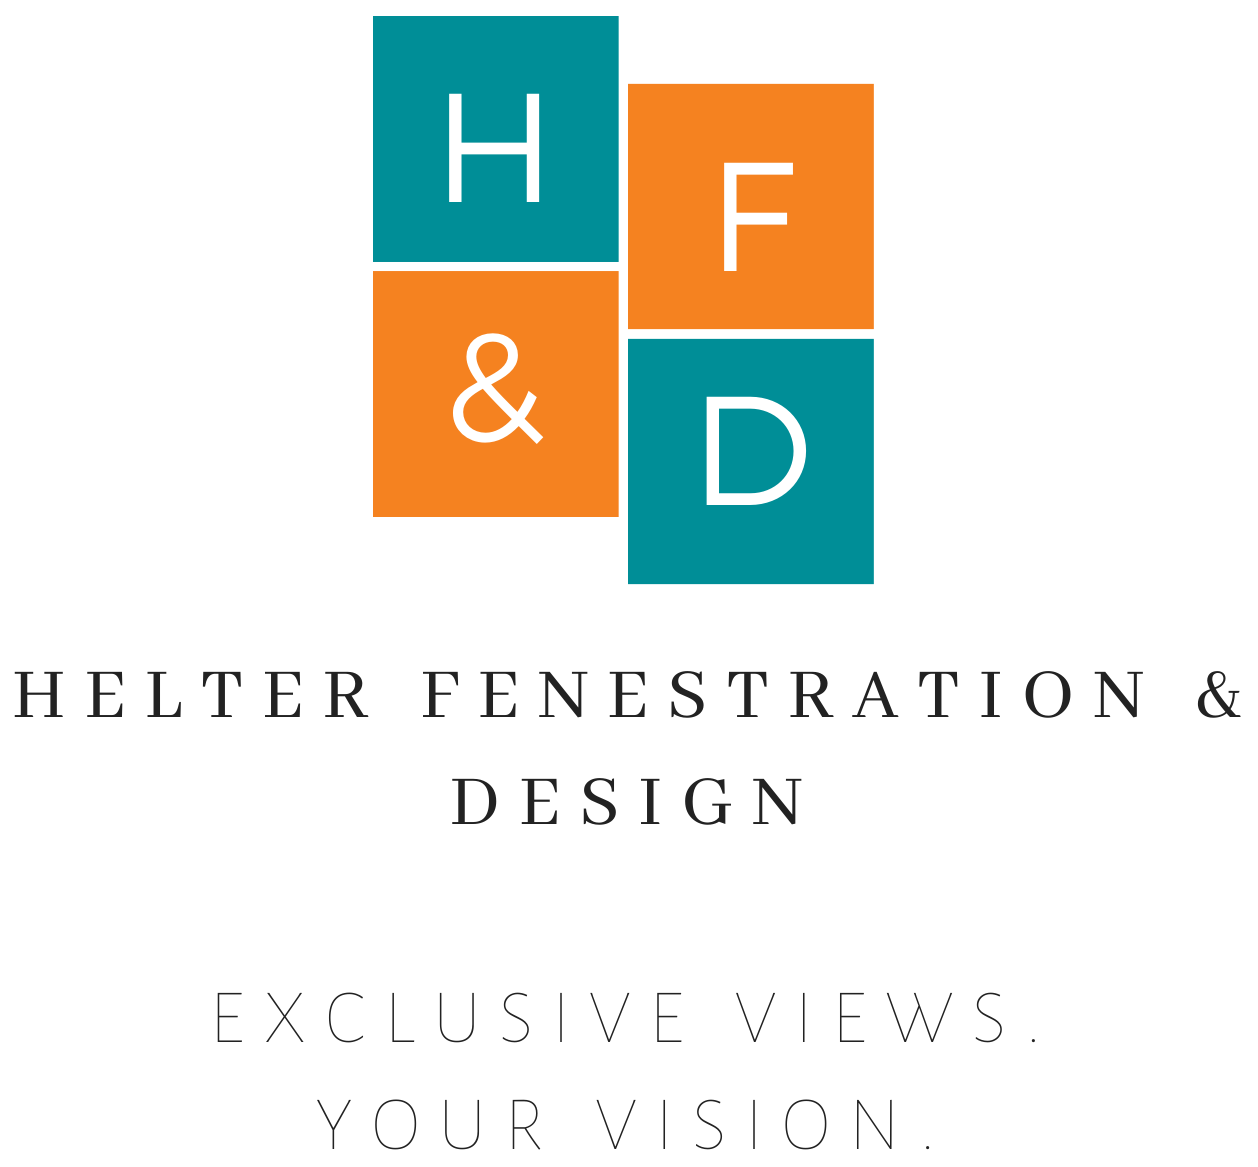 Helter Fenestration & Design